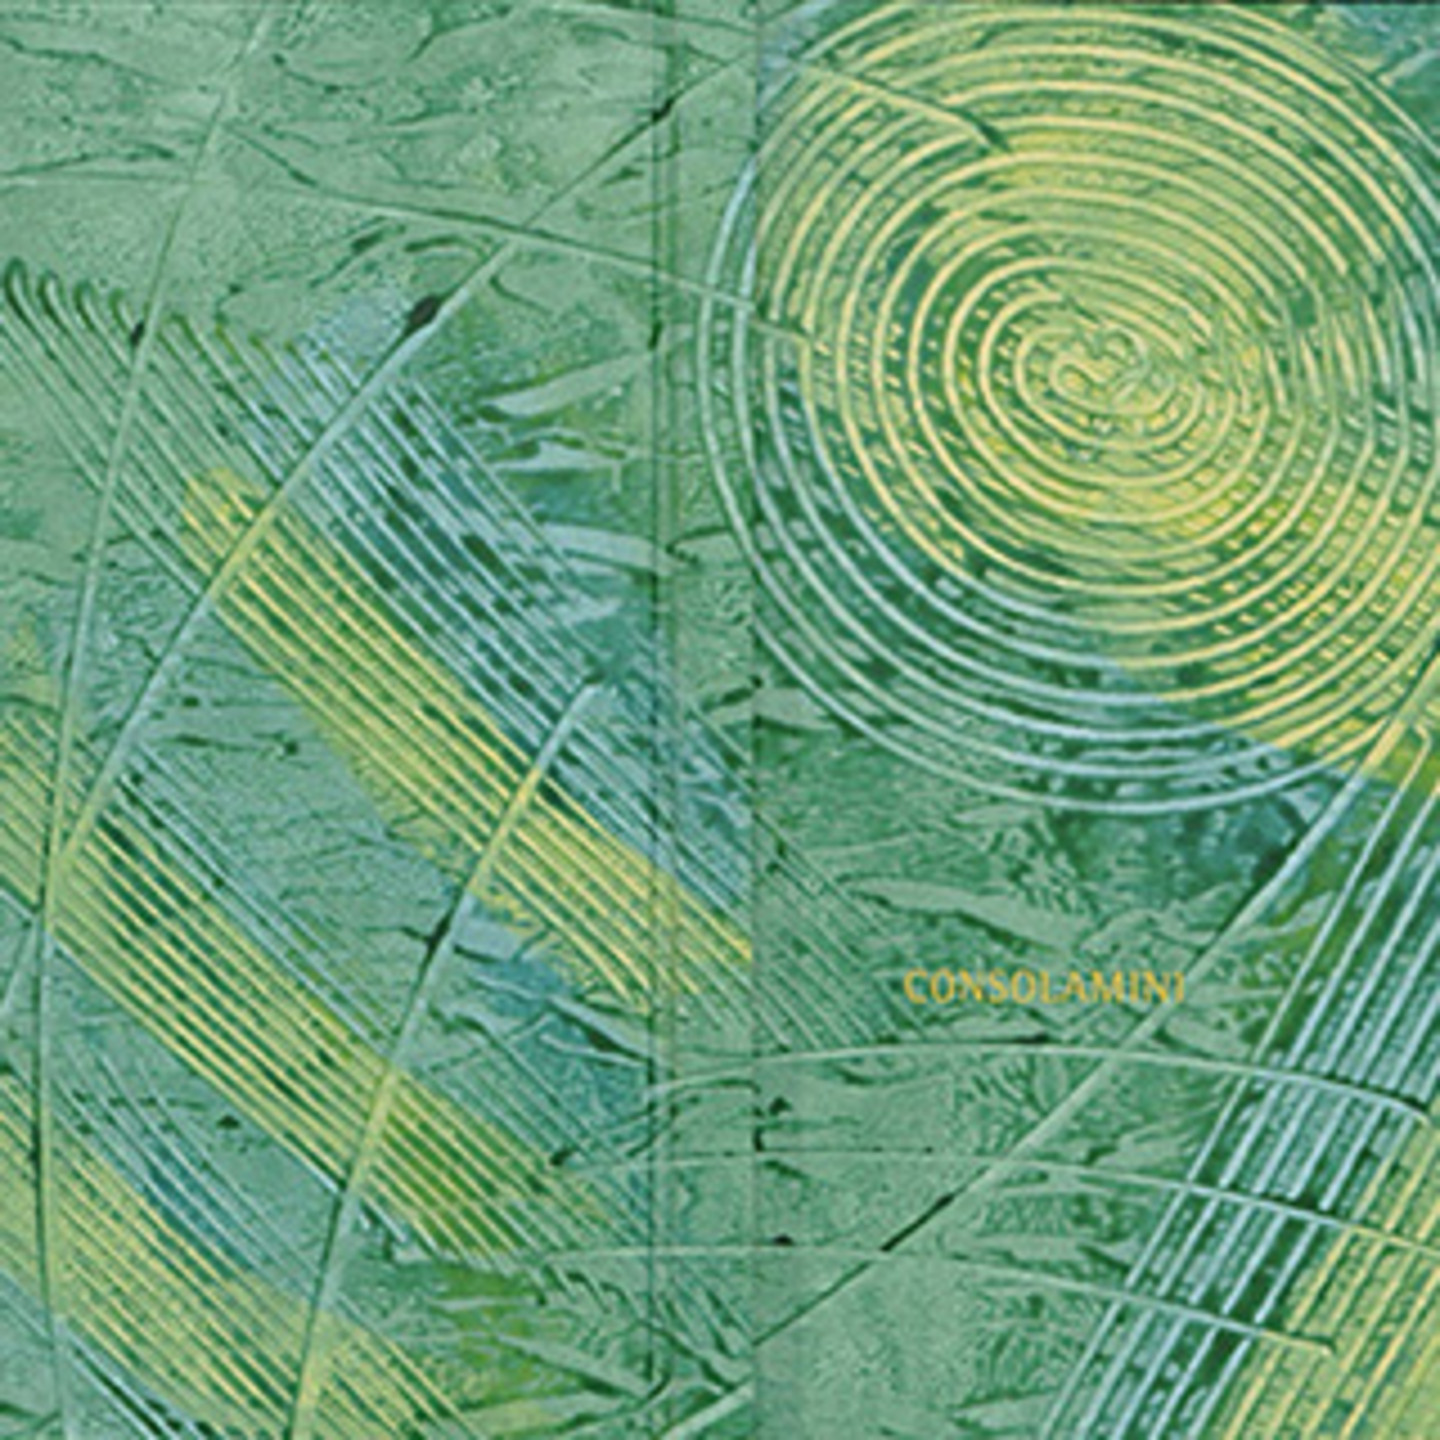 Eine blau-grün-gelbe Malerei. Zu erkennen sind Kreise und Striche in randomisierter Ausrichtung.